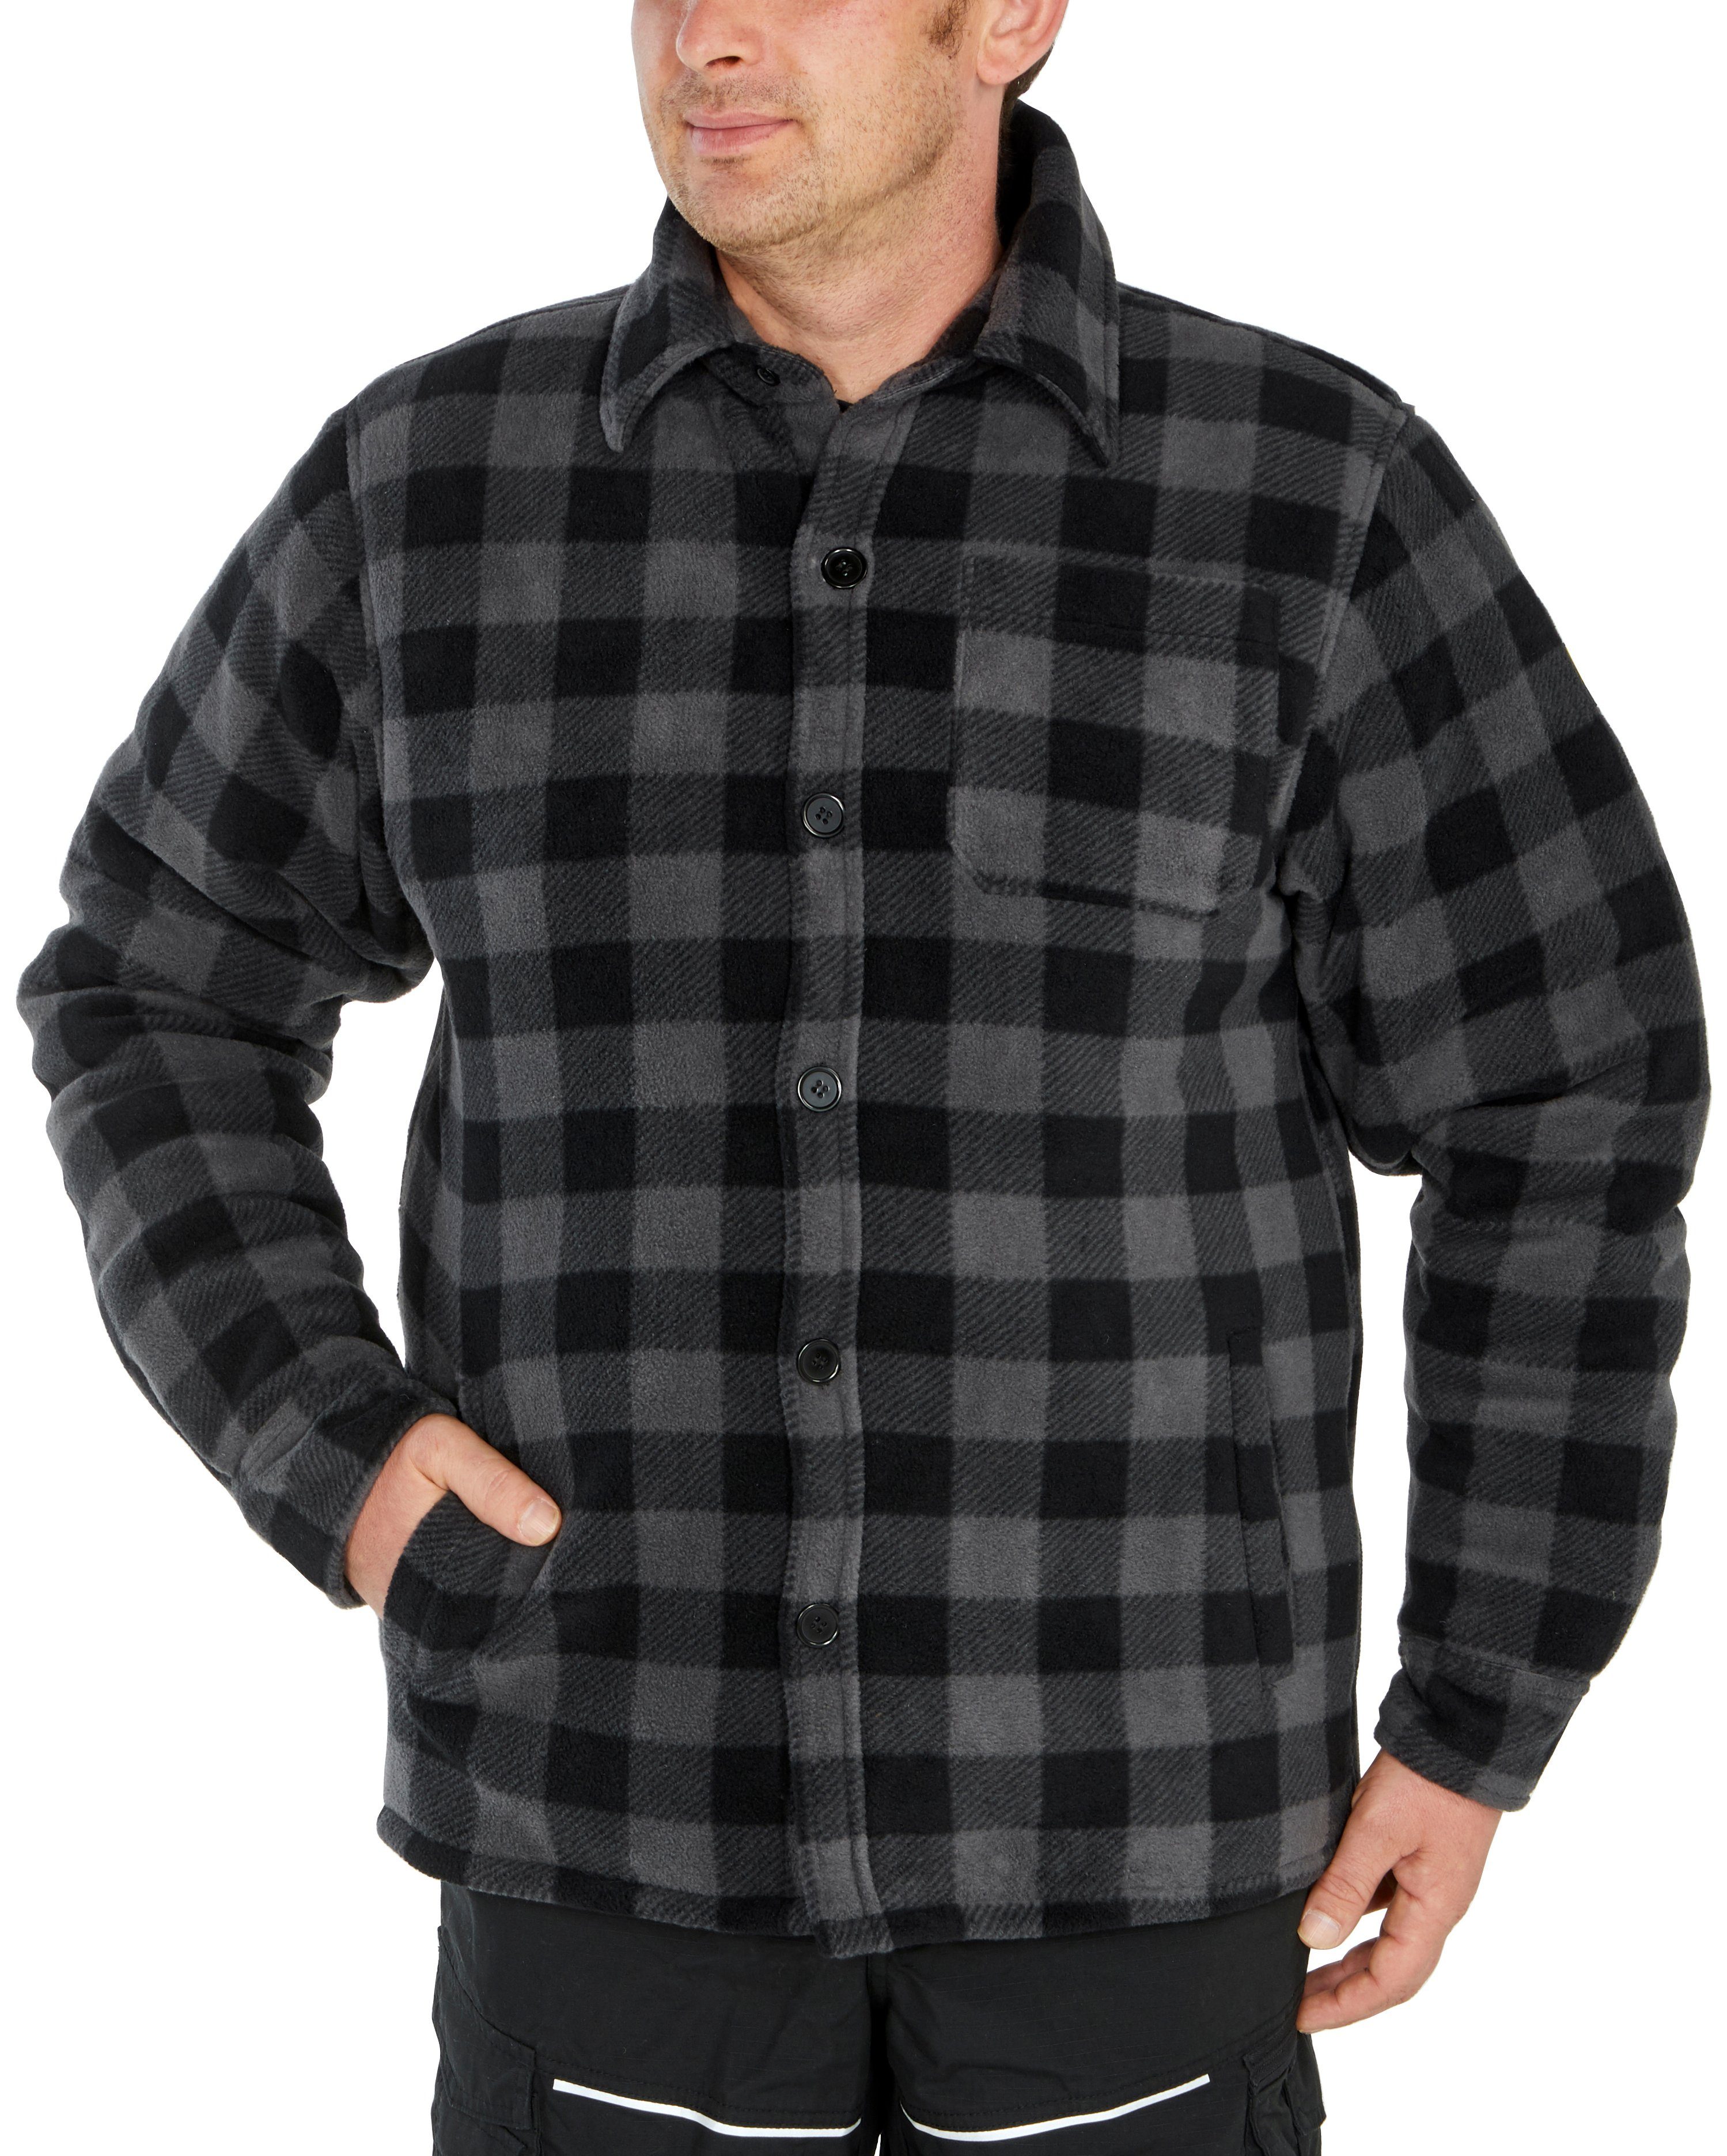 Northern Country zu gefüttert, grau-schwarz offen verlängertem zugeknöpft oder mit Flanellhemd mit Hemd (als Flanellstoff Jacke warm tragen) Taschen, 5 Rücken